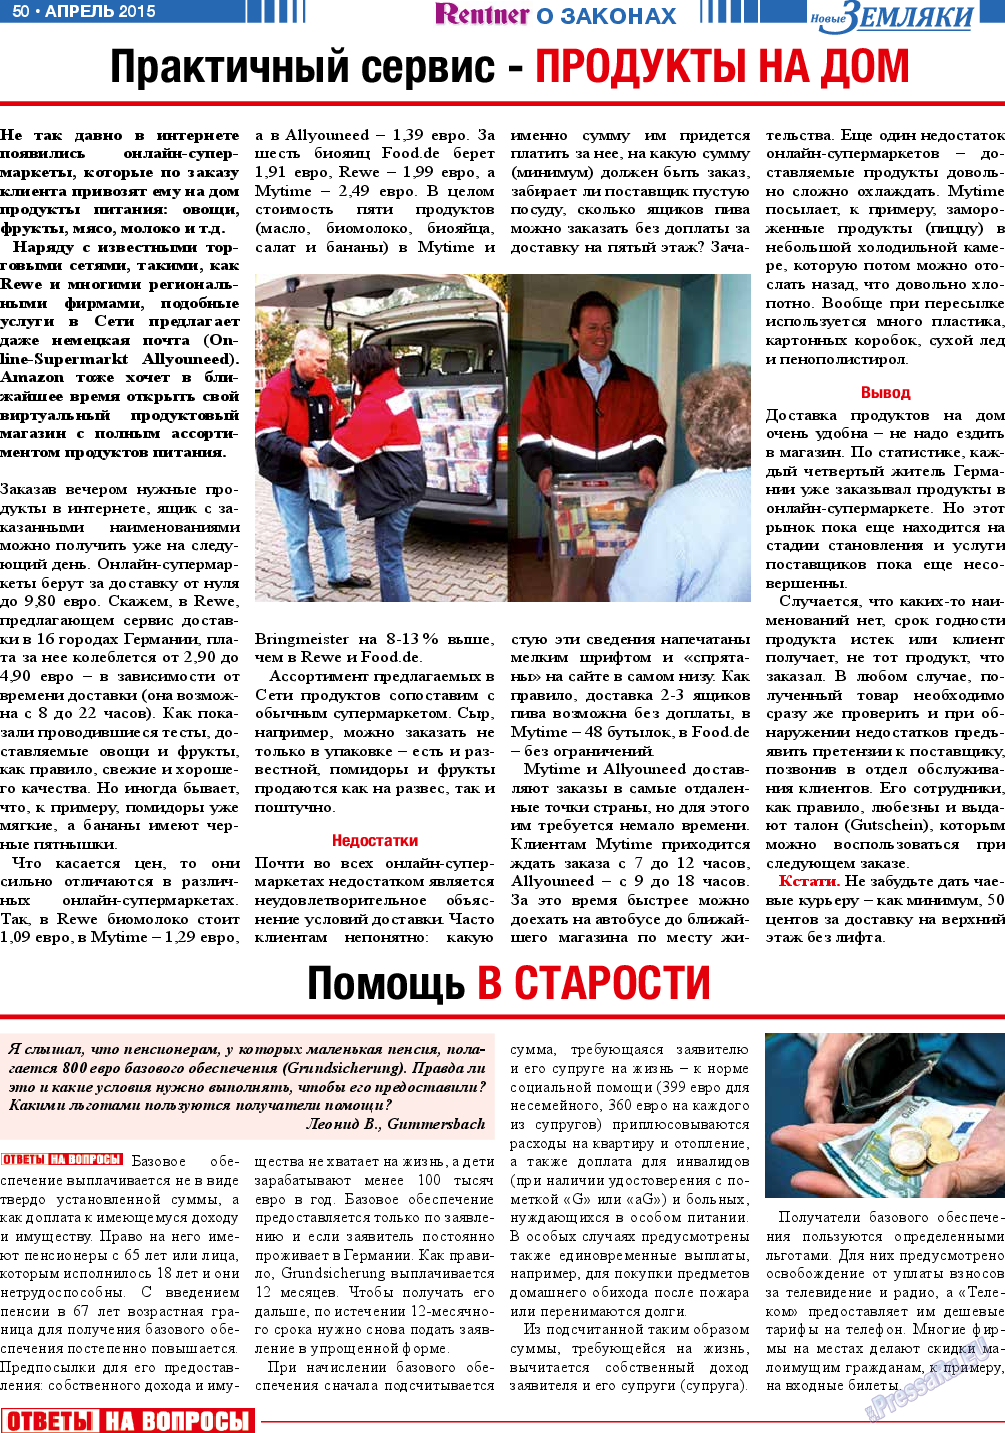 Новые Земляки, газета. 2015 №4 стр.50